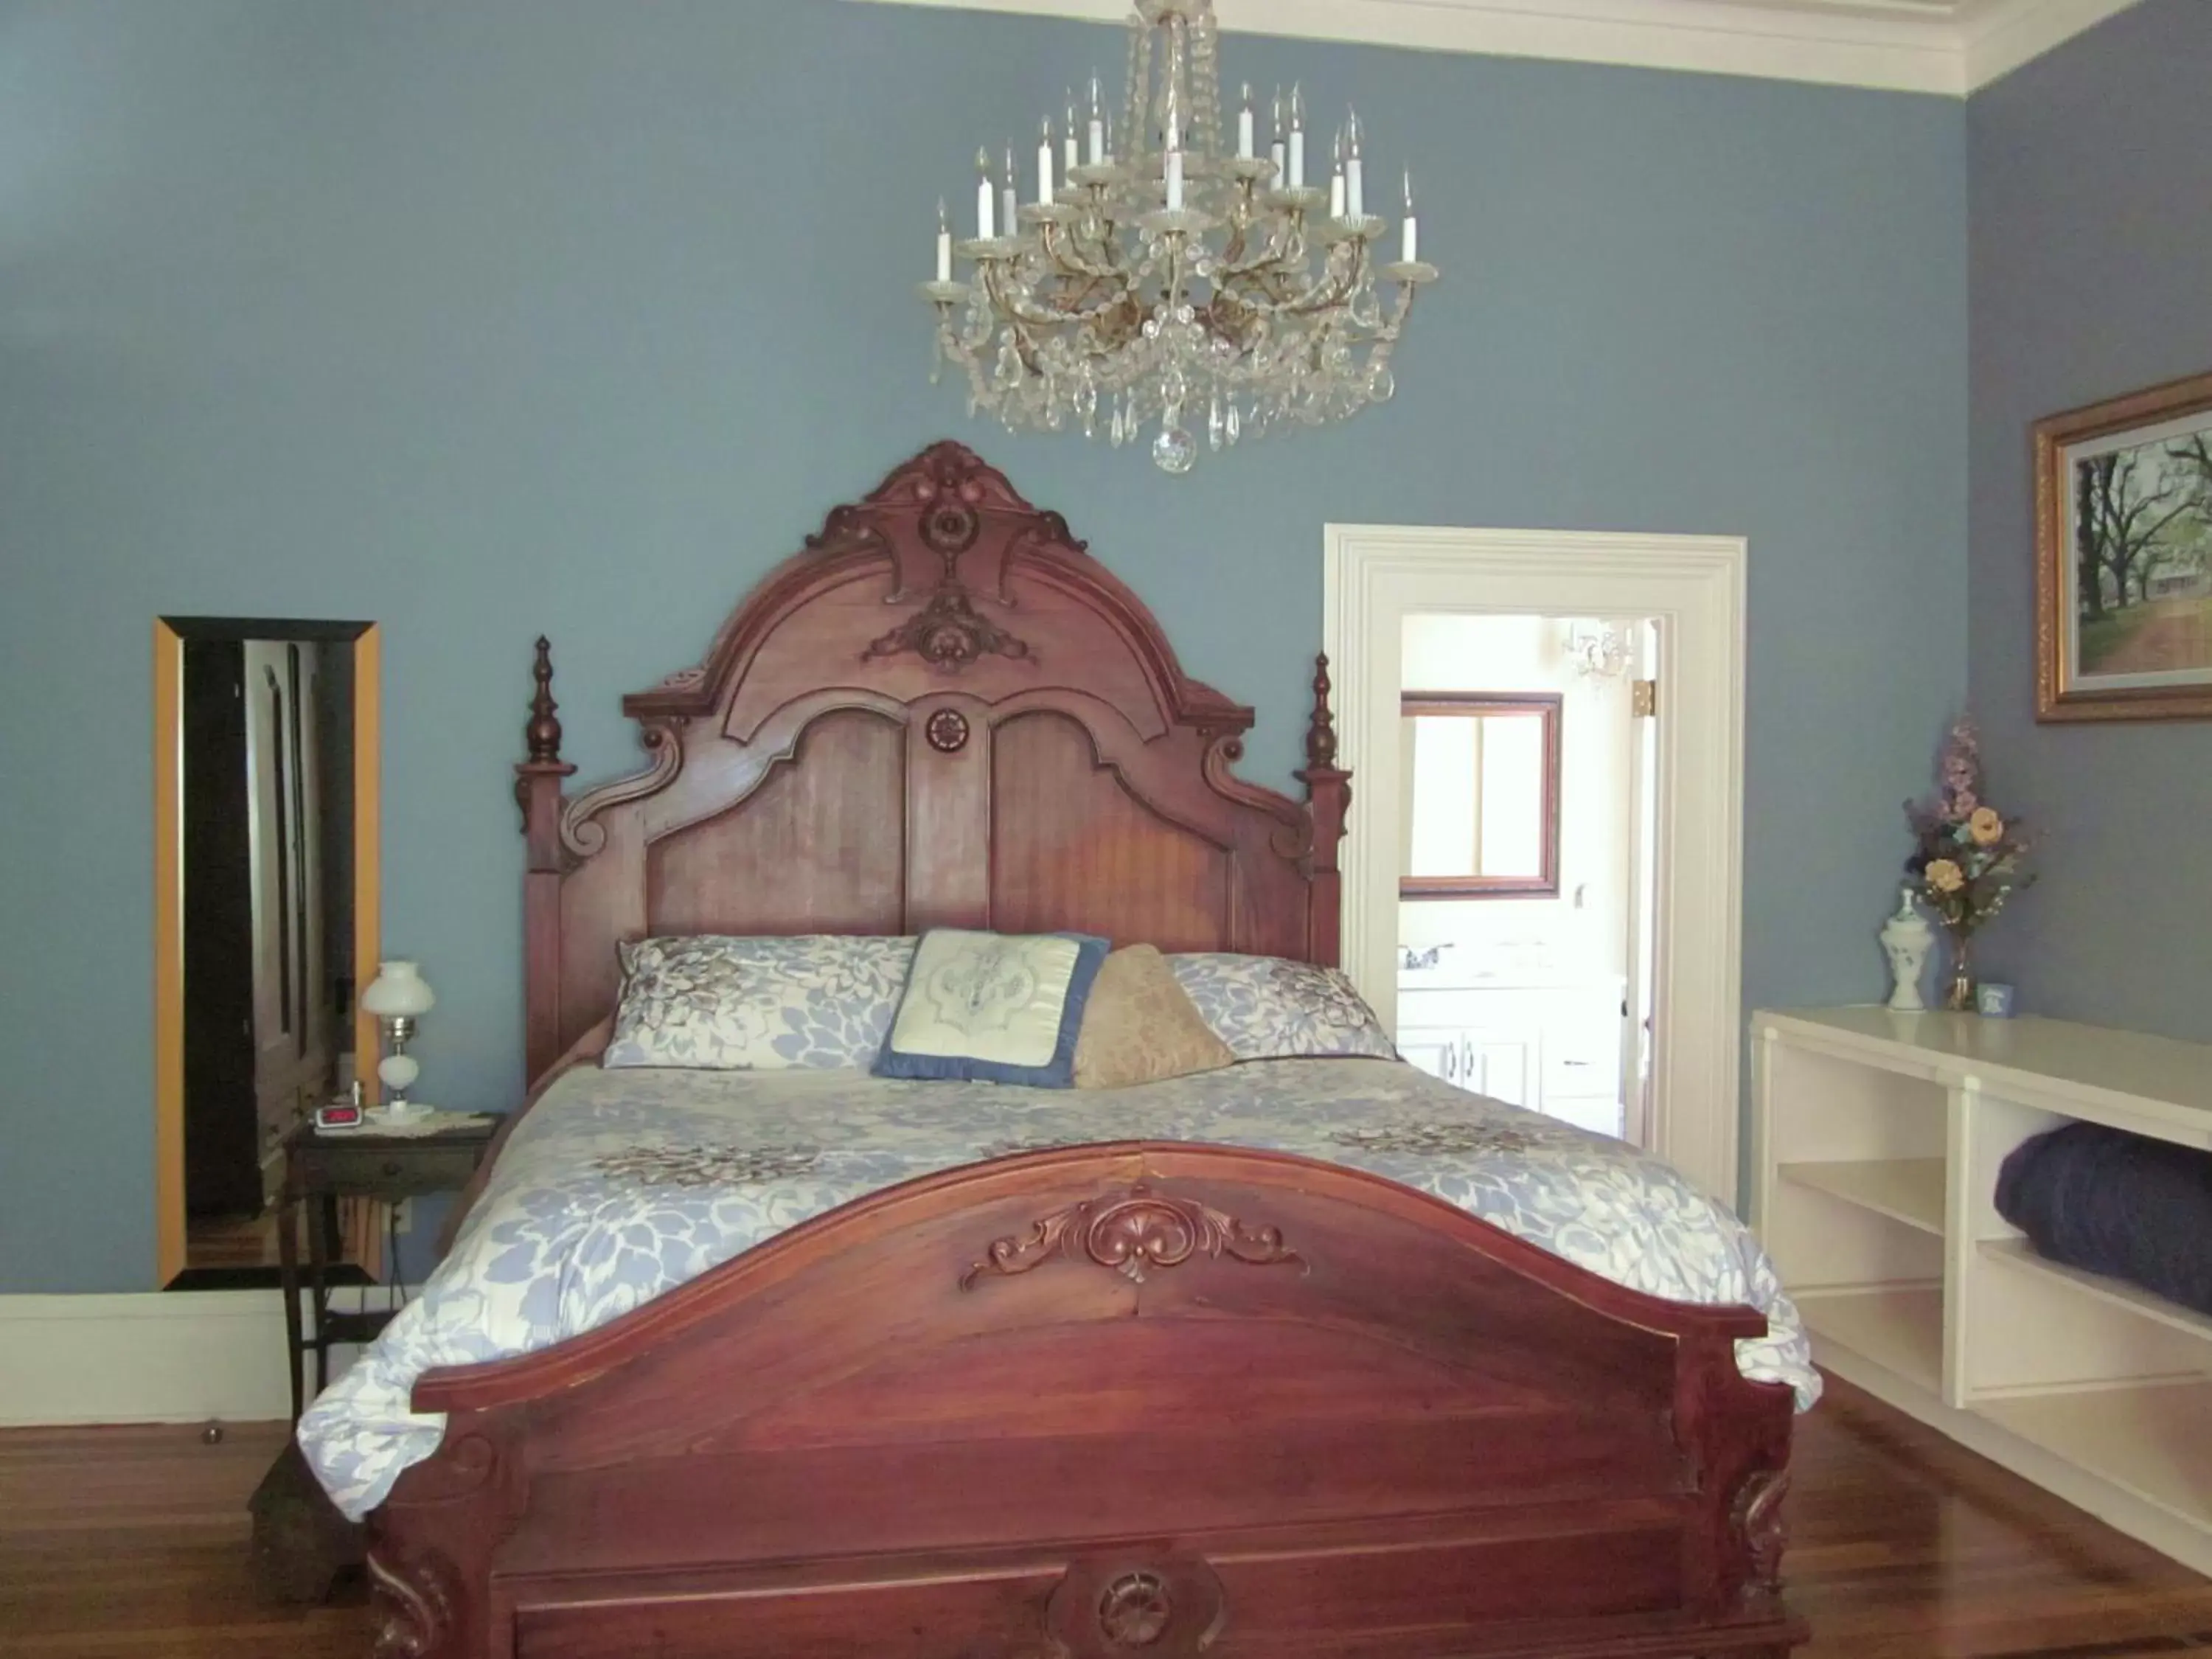 Bed, Room Photo in Baer House Inn